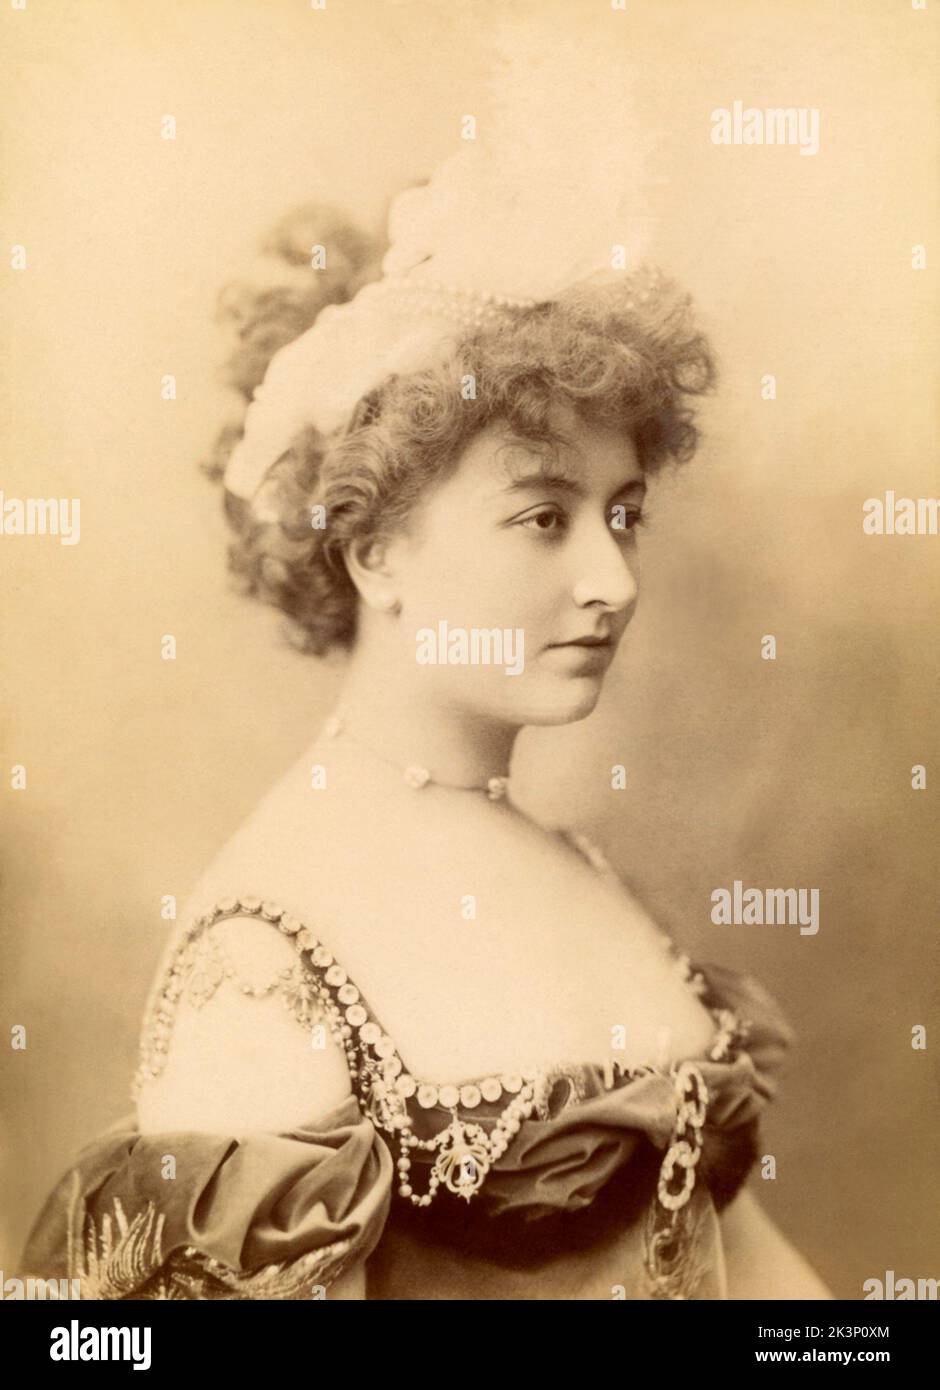 1895 ca , Paris , FRANCE : The celebrated french actress  CECILE SOREL ( 1873 - 1966 ) , lover of italian poet Gabriele D'Annununzio .  Photo by Charles Reutlinger , Paris . - BELLE EPOQUE - TEATRO - THEATRE  - ART NOUVEAU - bijoux  - necklace - collana  - BELLE EPOQUE  - DIVA - DIVINA  - decolleté - scollatura - neckopening --- Archivio GBB Stock Photo